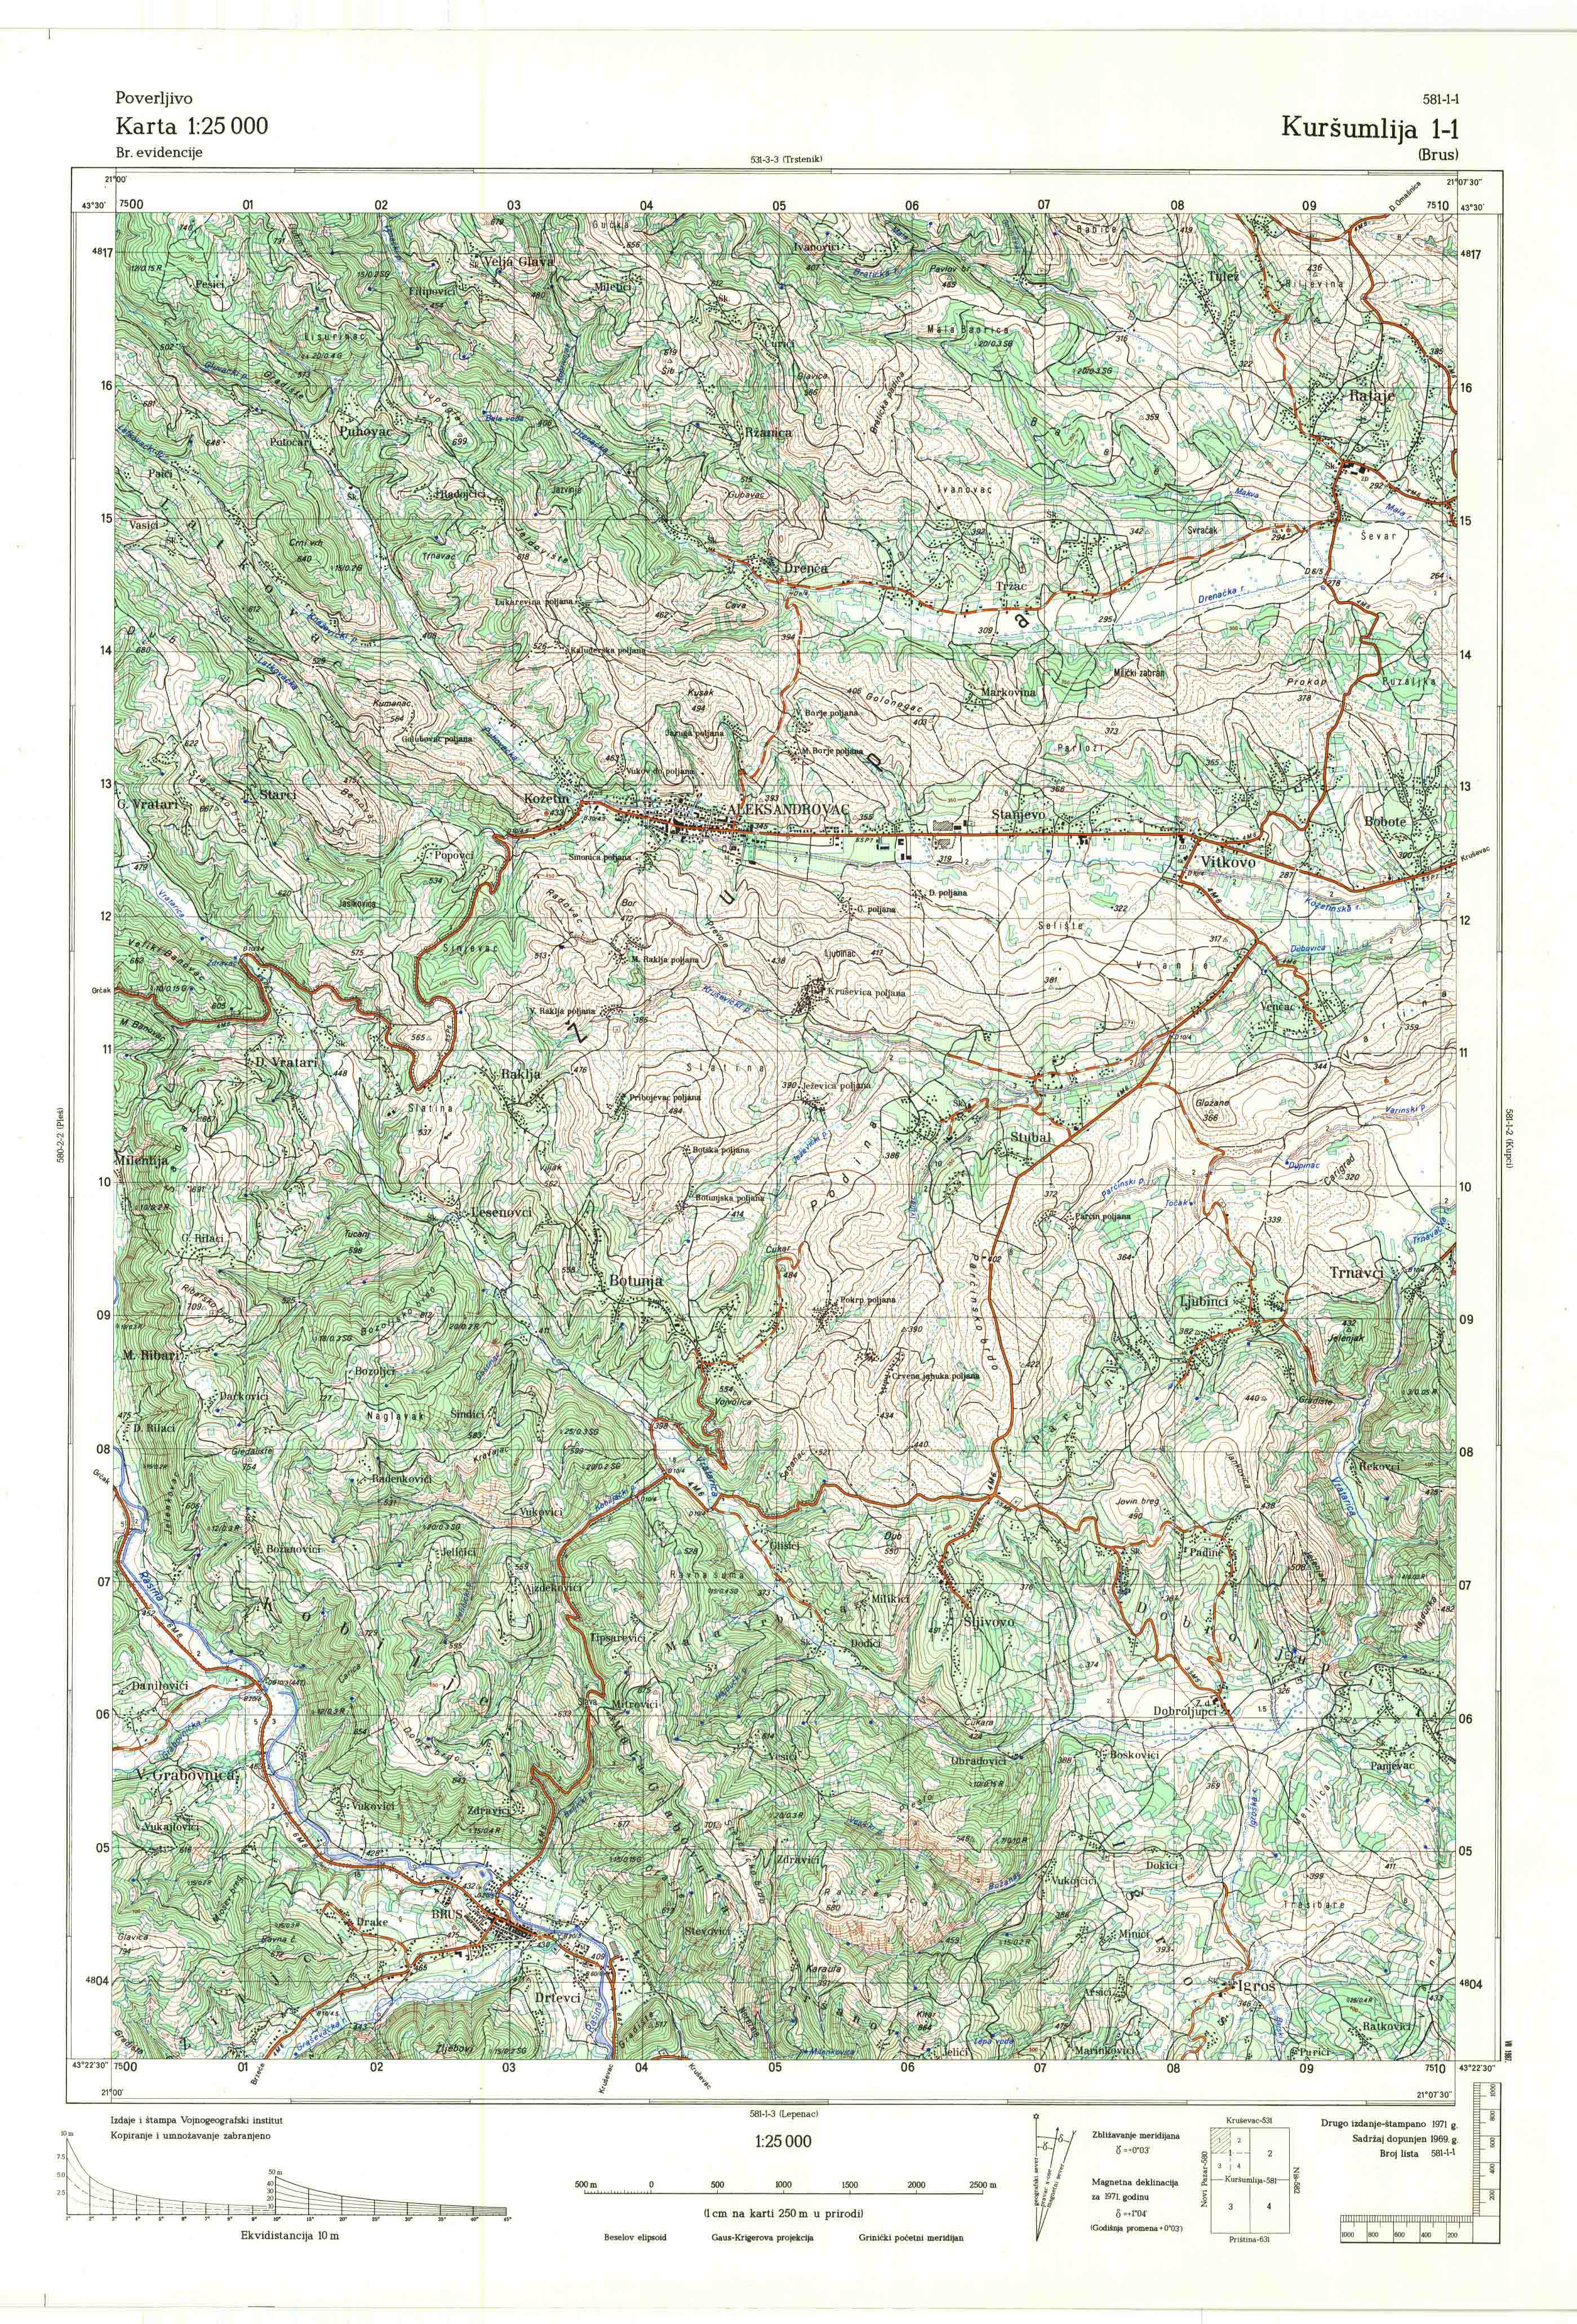  topografska karta srbije 25000 JNA  Kuršumlija